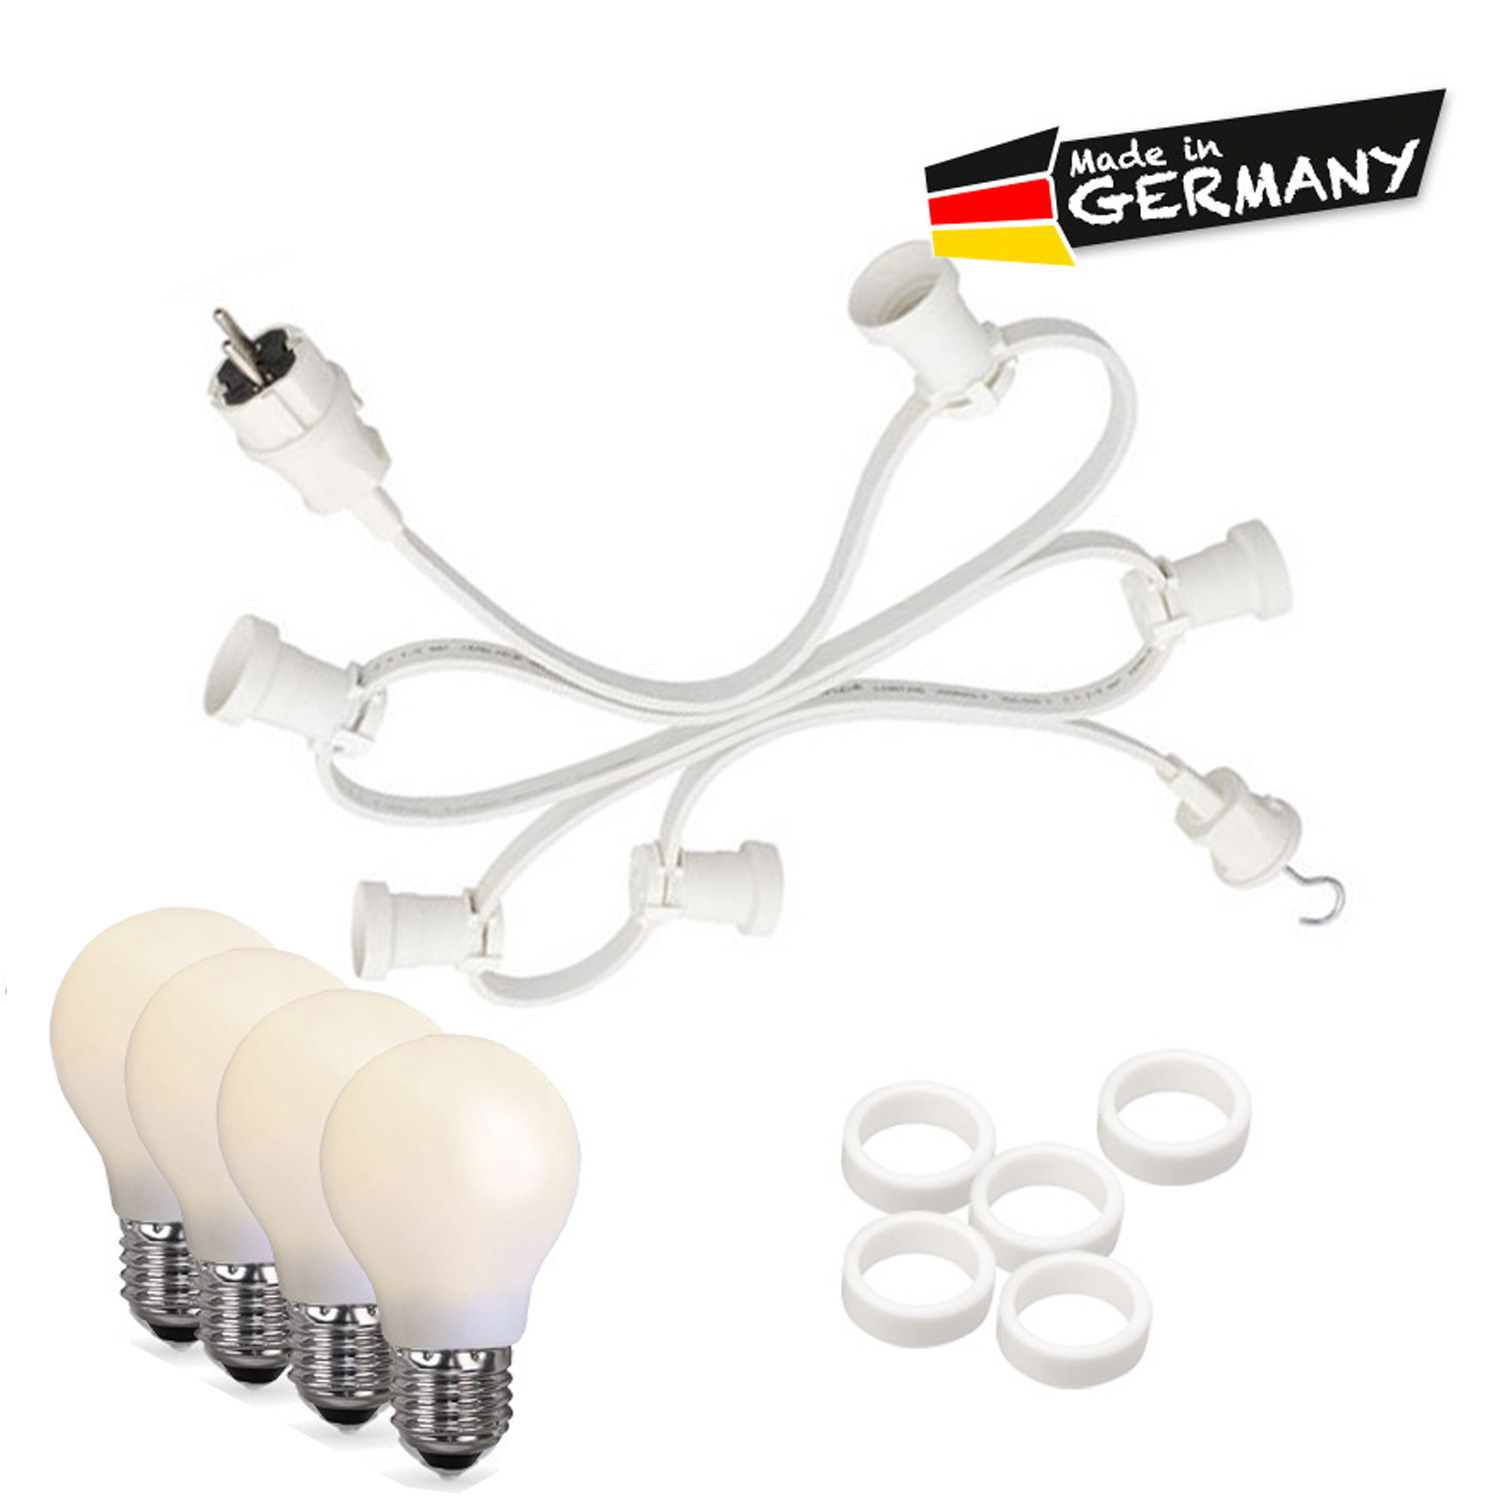 Illu-/Partylichterkette 40m - Außen - Made in Germany - 60 bruchfeste opale LED Tropfenlampen